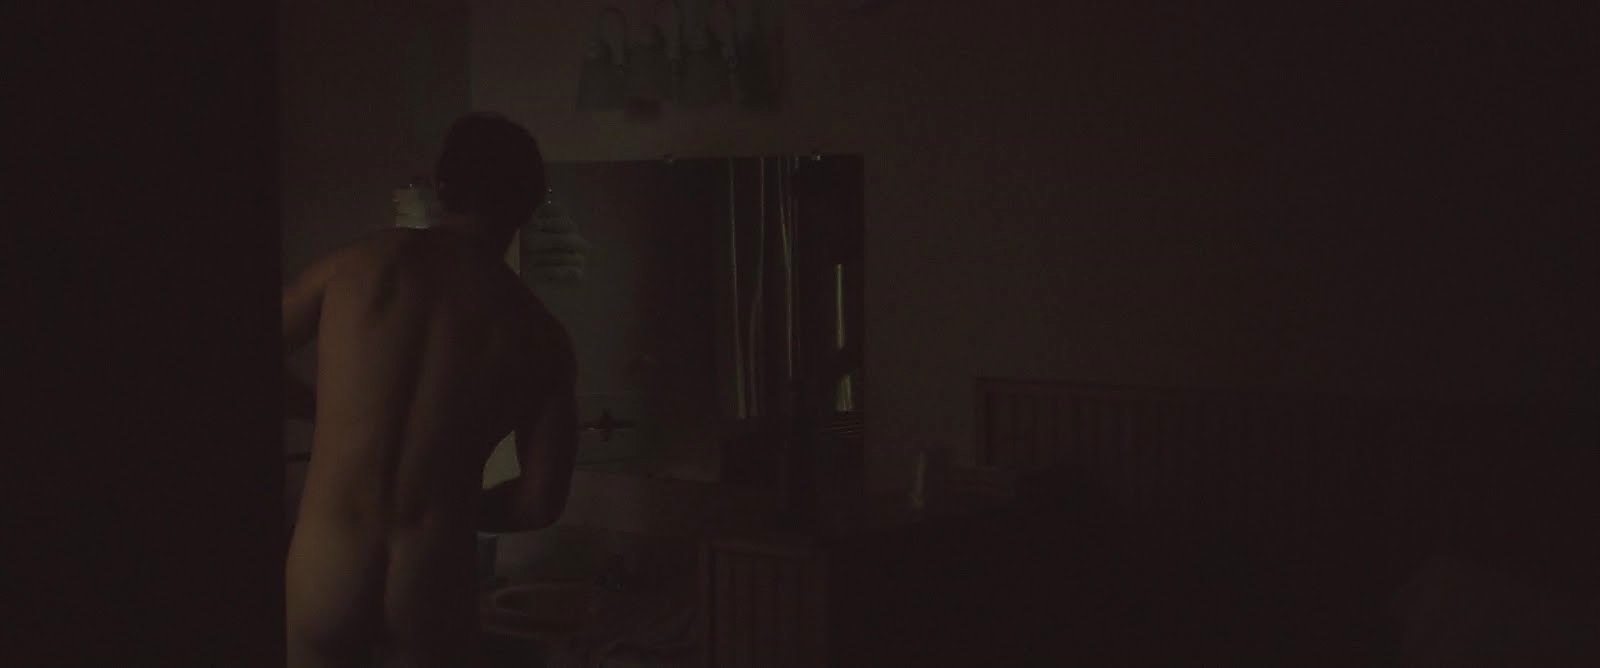 Alex Pettyfer sexy shirtless scene January 5, 2018, 8am